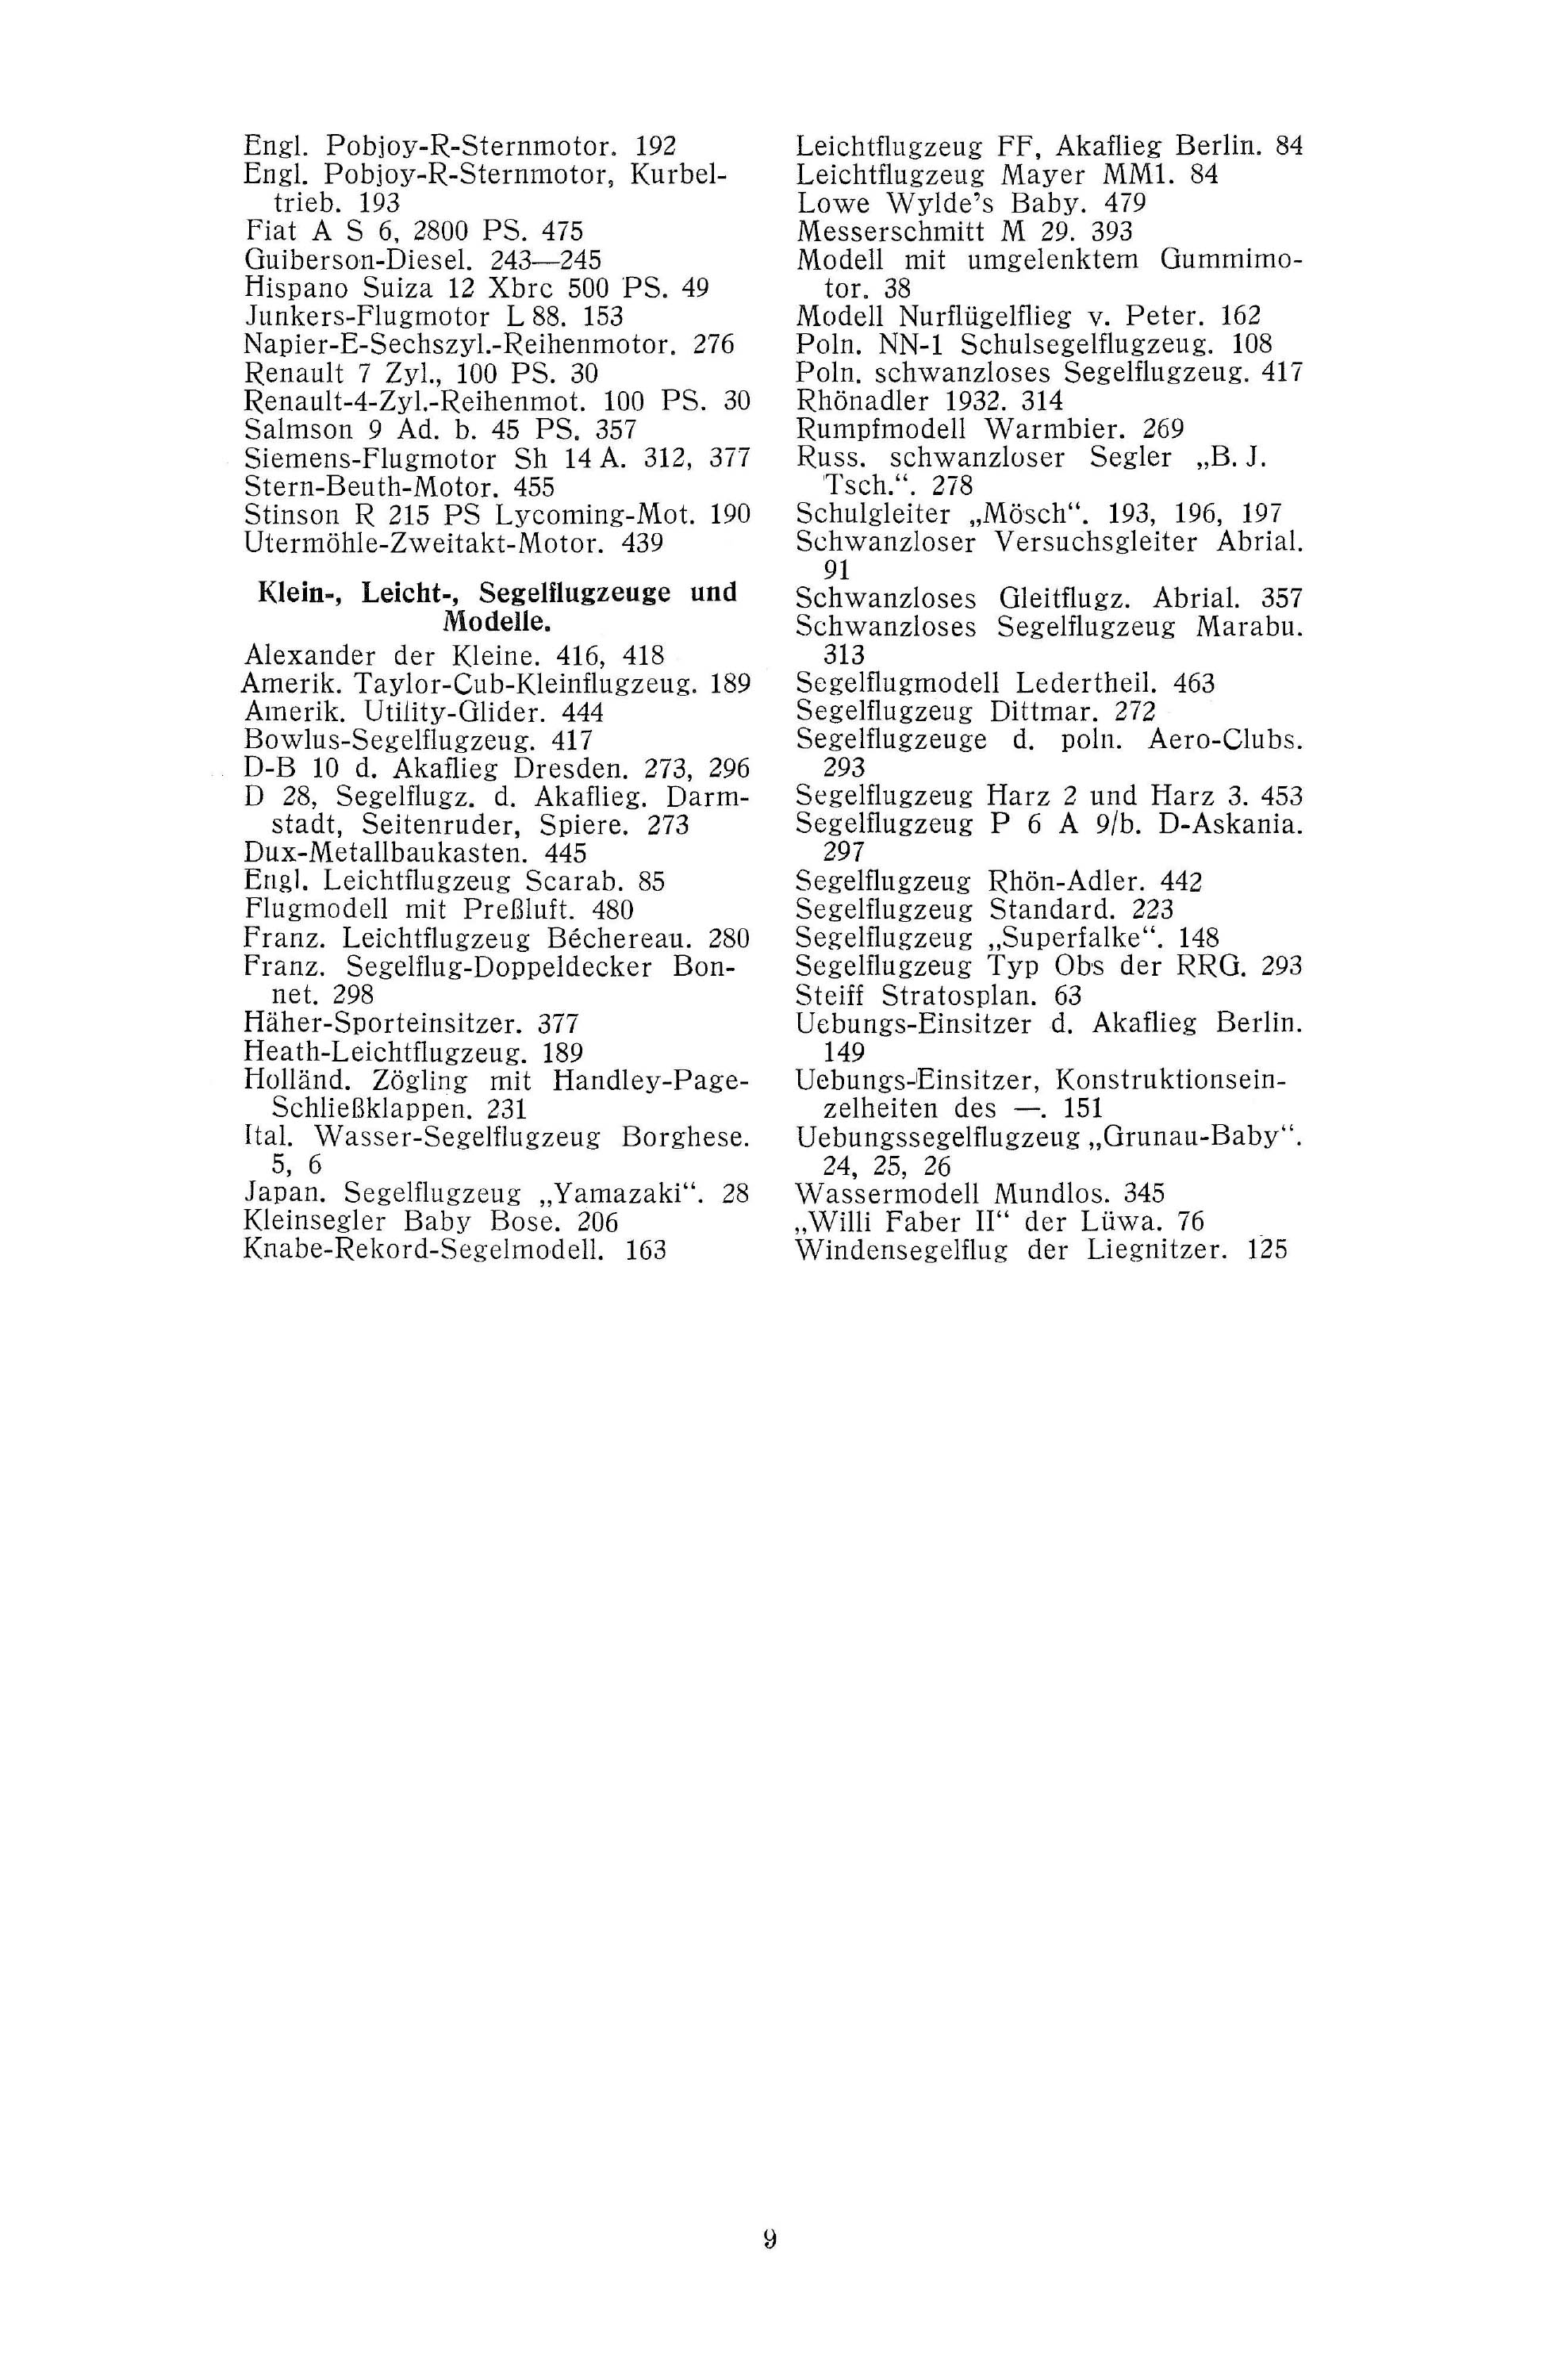 Sachregister und Inhaltsverzeichnis der Zeitschrift Flugsport 1932